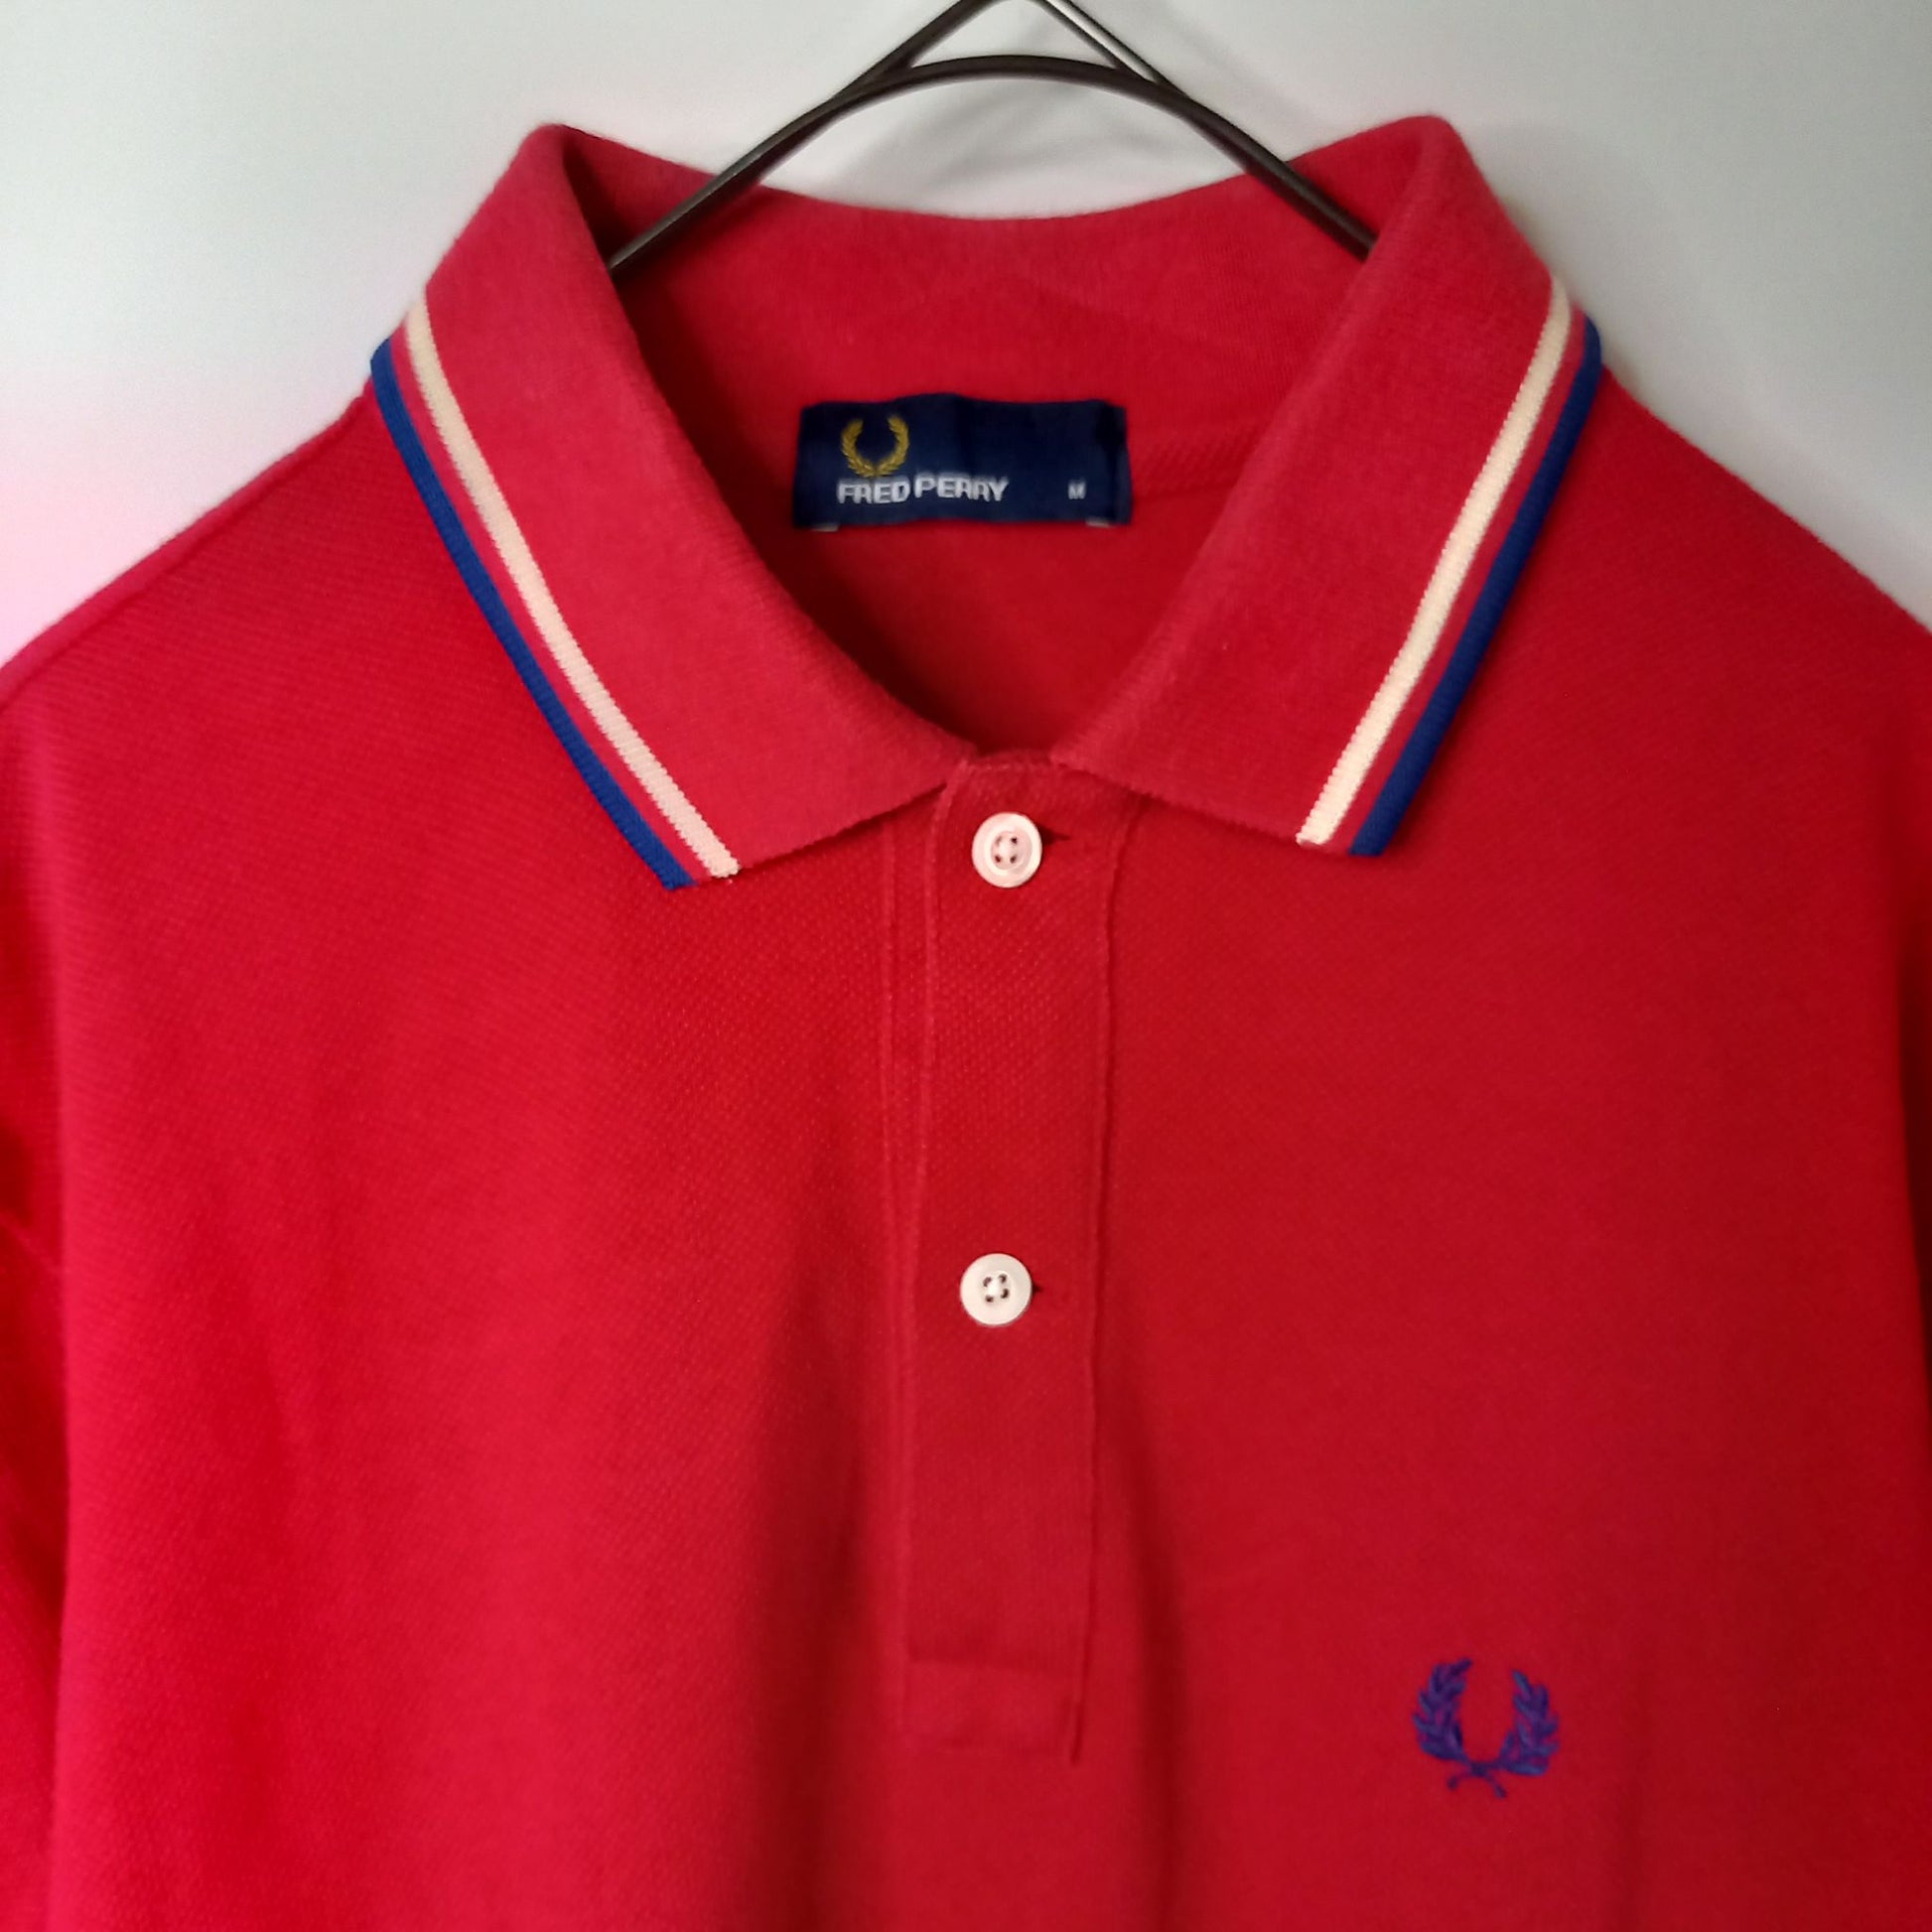 日本製 フレッドペリー ポロシャツ 半袖 ヒットユニオン 刺繍ロゴ 赤 M